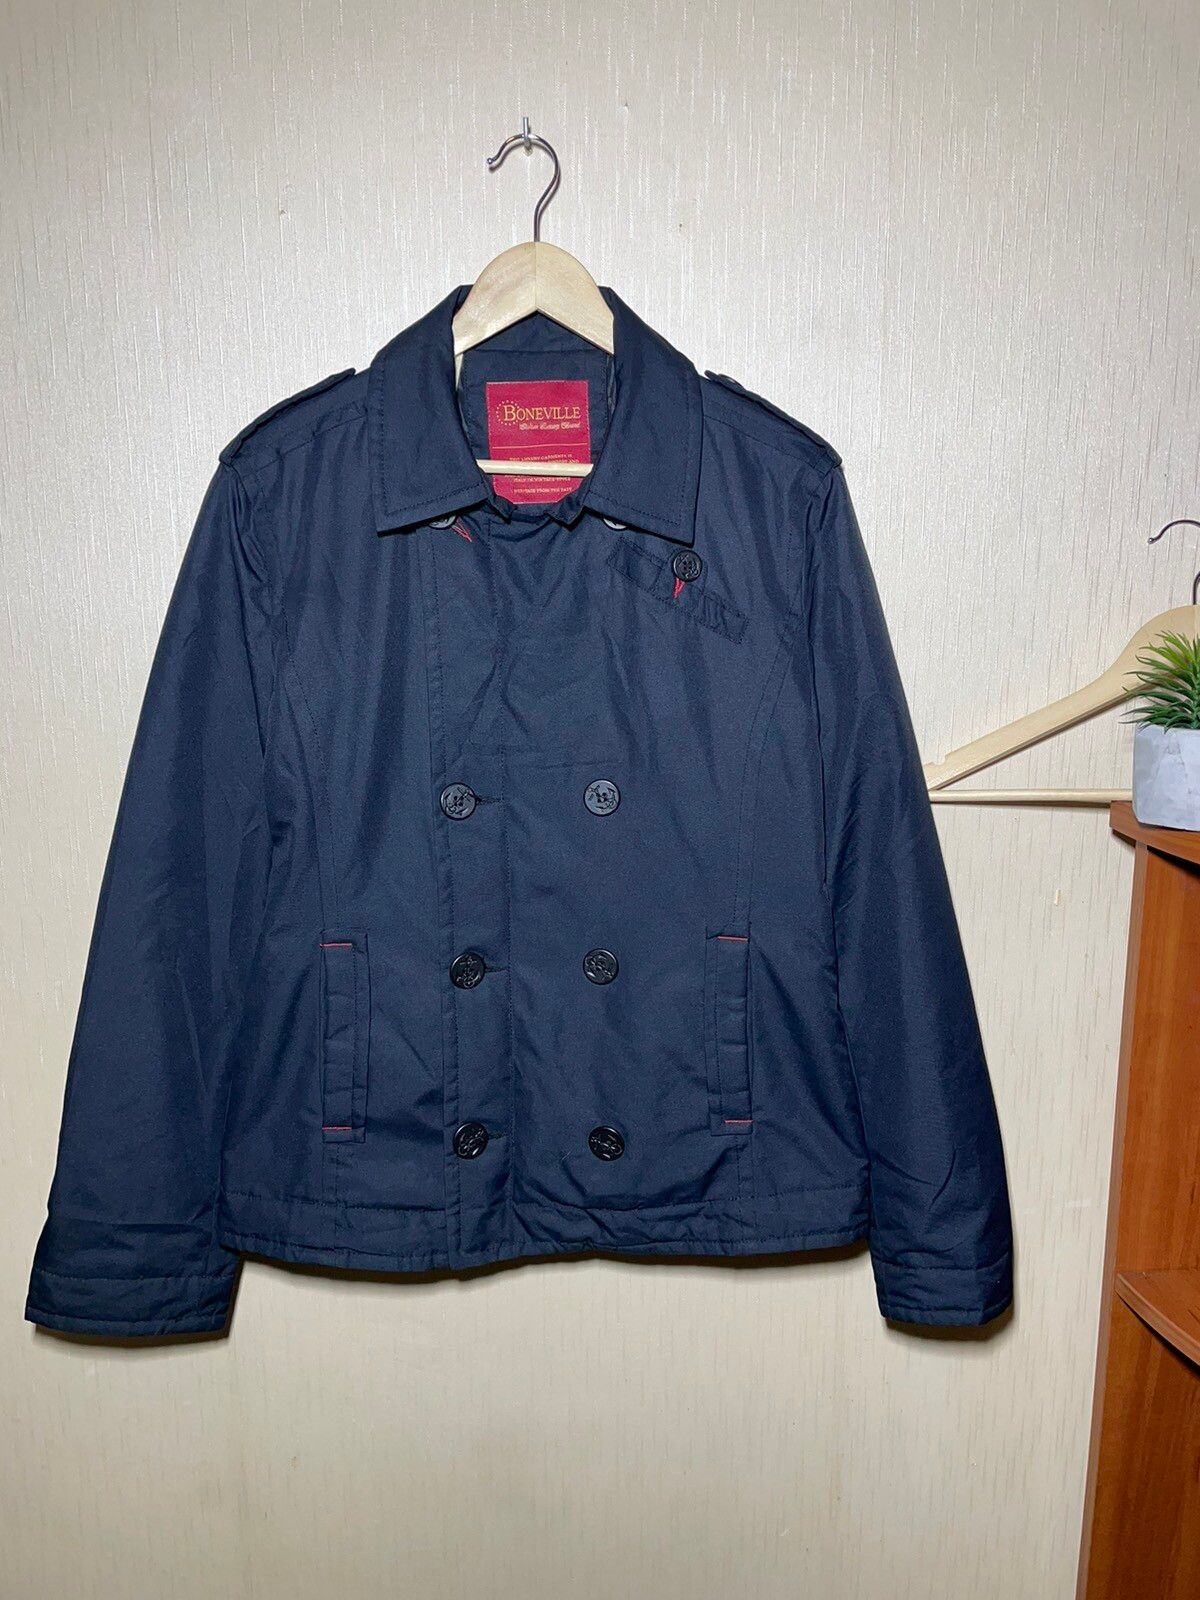 Vintage Boneville vintage rare jacket | Grailed